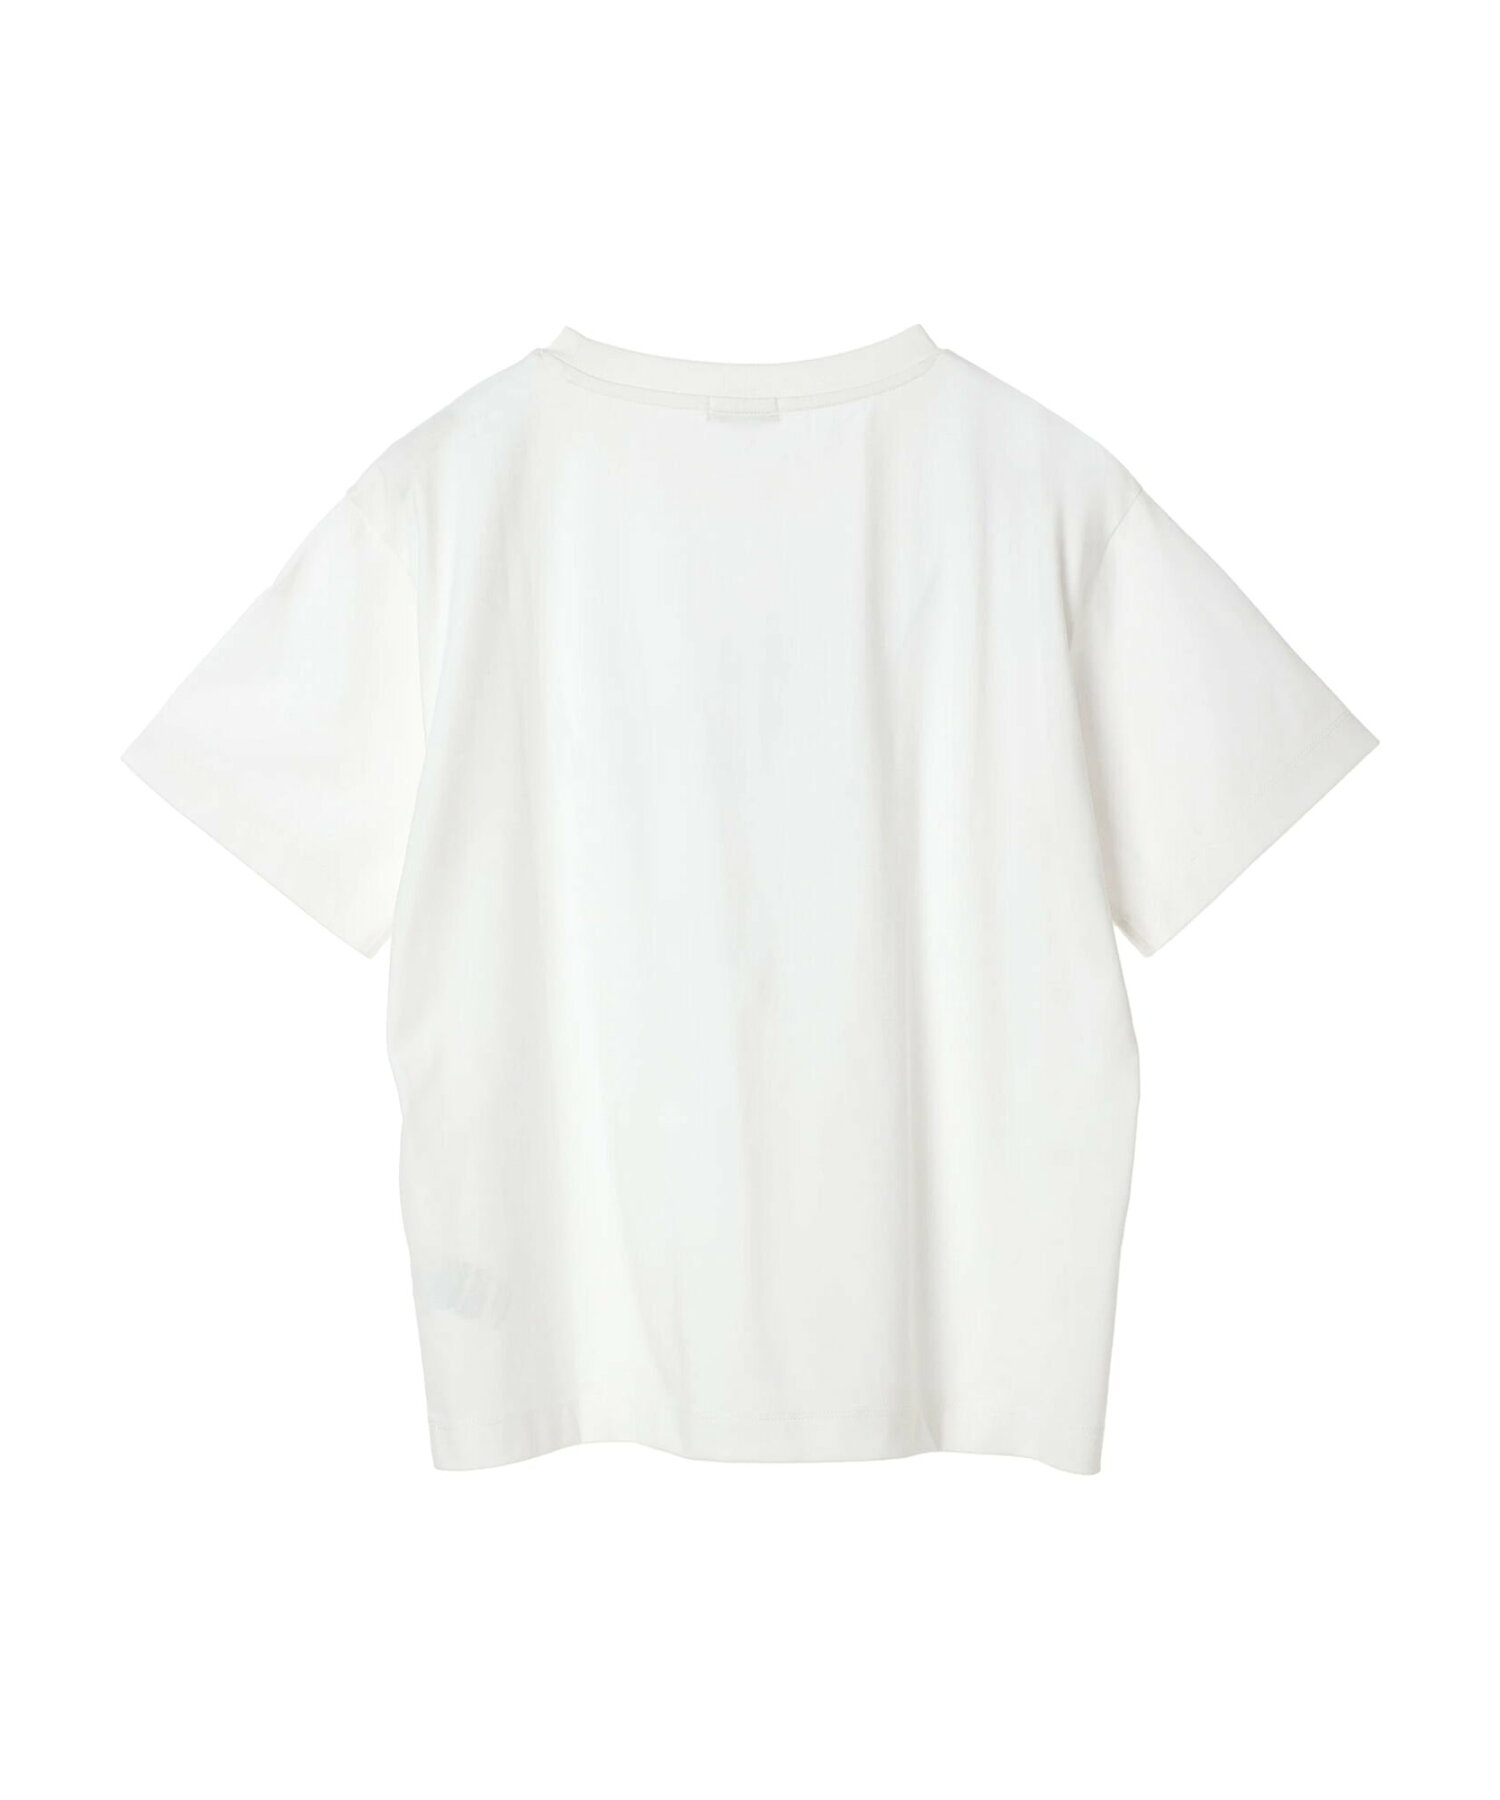 アソートグラフィックレギュラーT Tシャツ/半袖/レディース/24SS